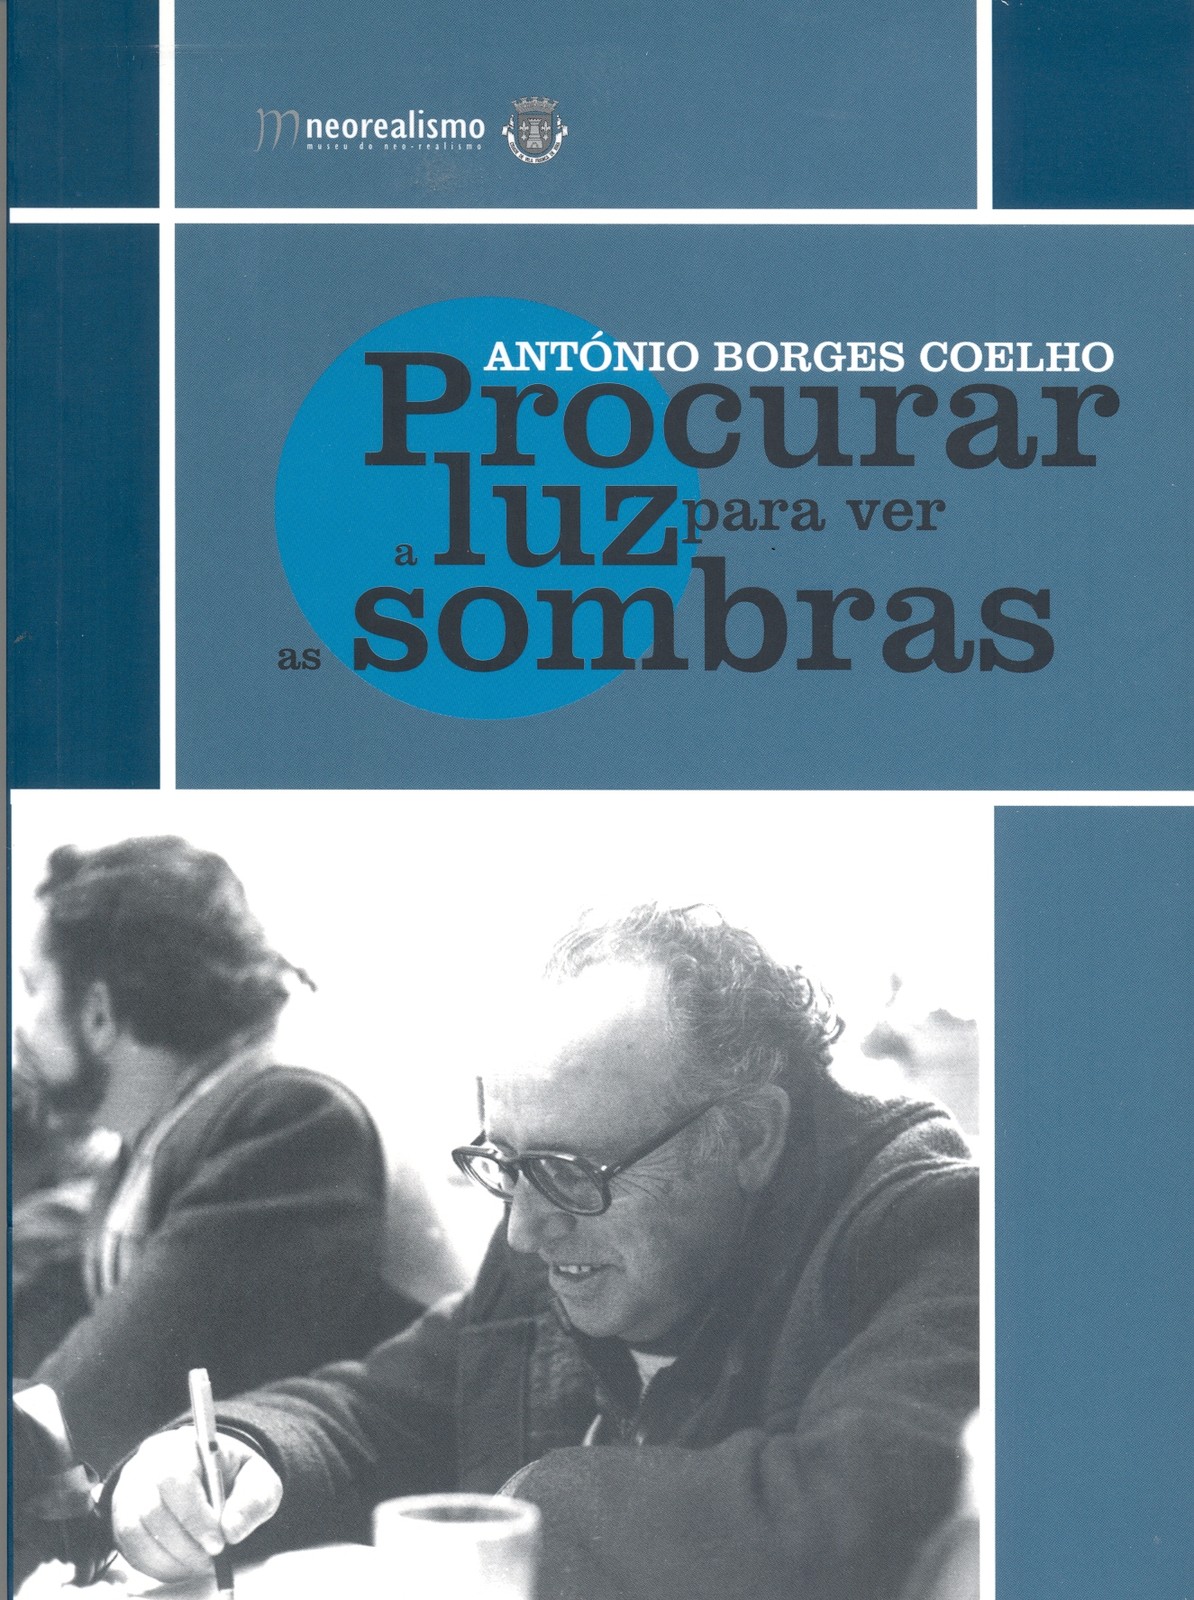 Catálogo da Exposição António Borges Coelho, Procurar a luz para ver as sombras